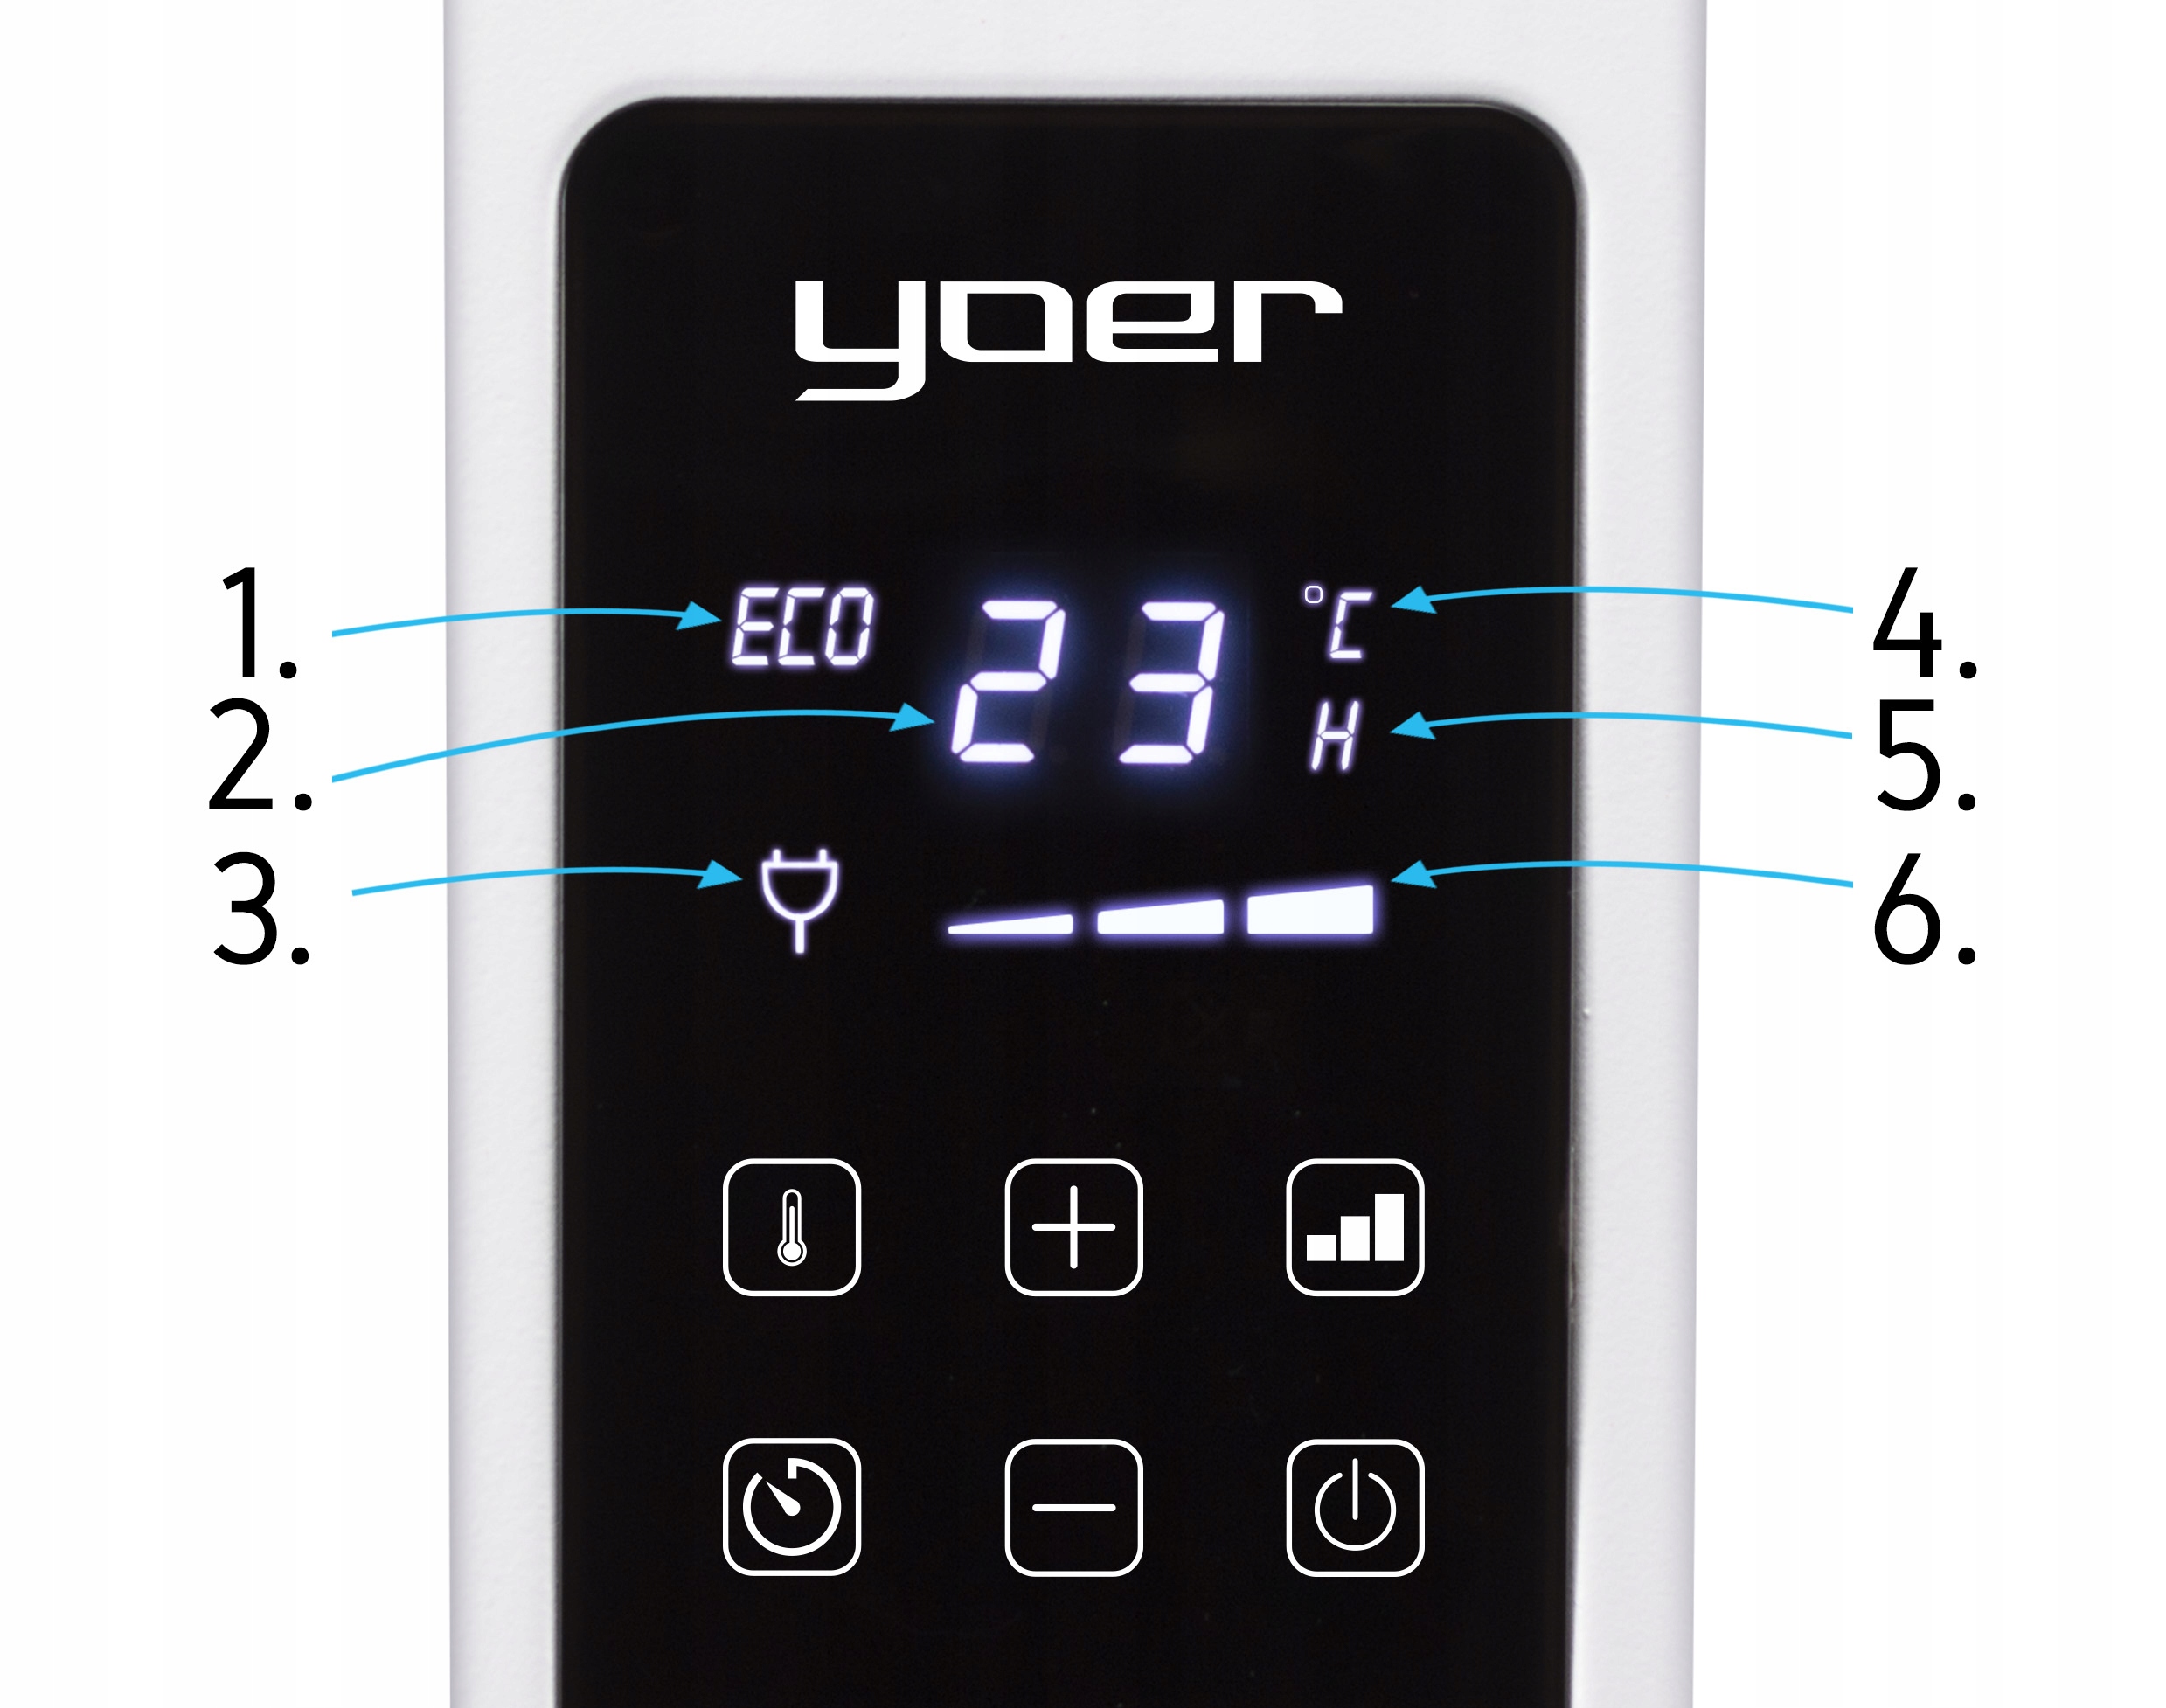 Електричний панельний обігрівач 2в1 YOER 2000W + ECO Запобіжний вимикач, захист від перегріву, автоматичне відключення в разі перекидання пристрою